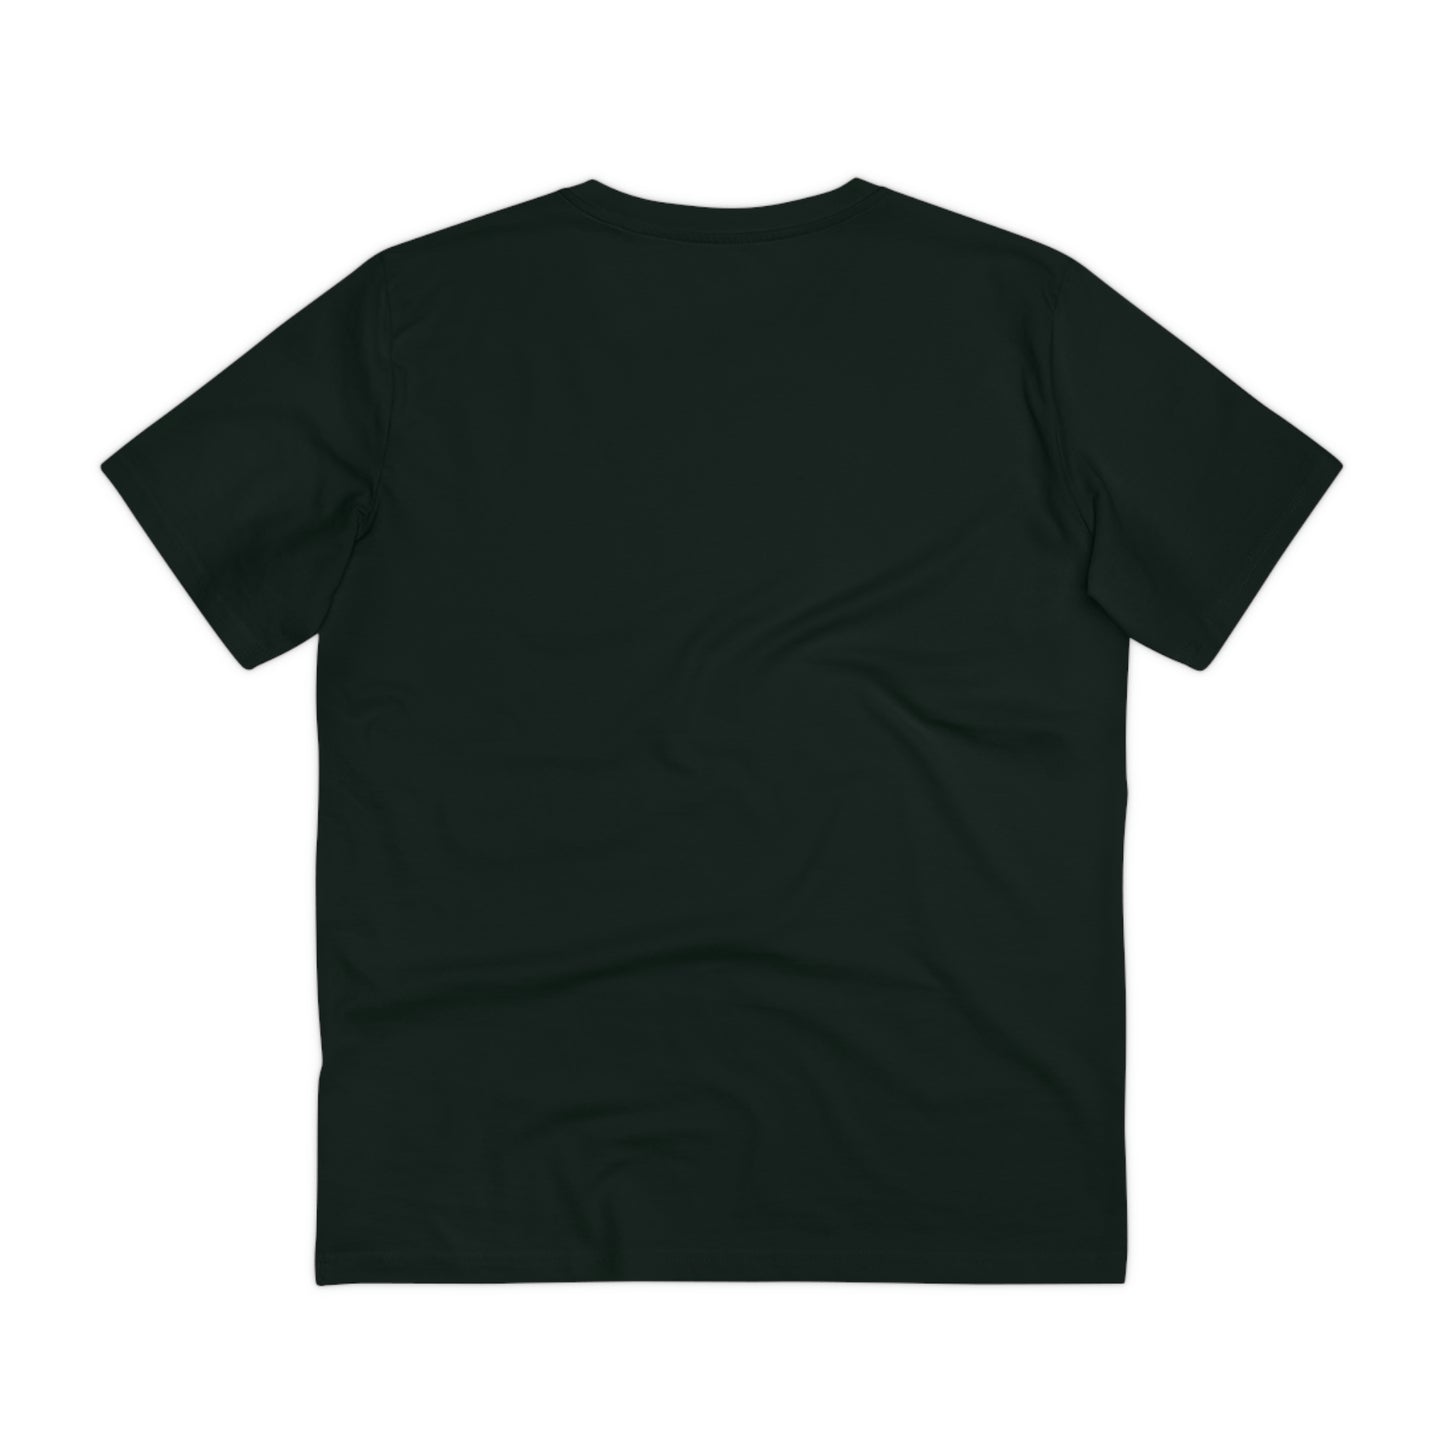 Freename - Dark art T-shirt - Unisex